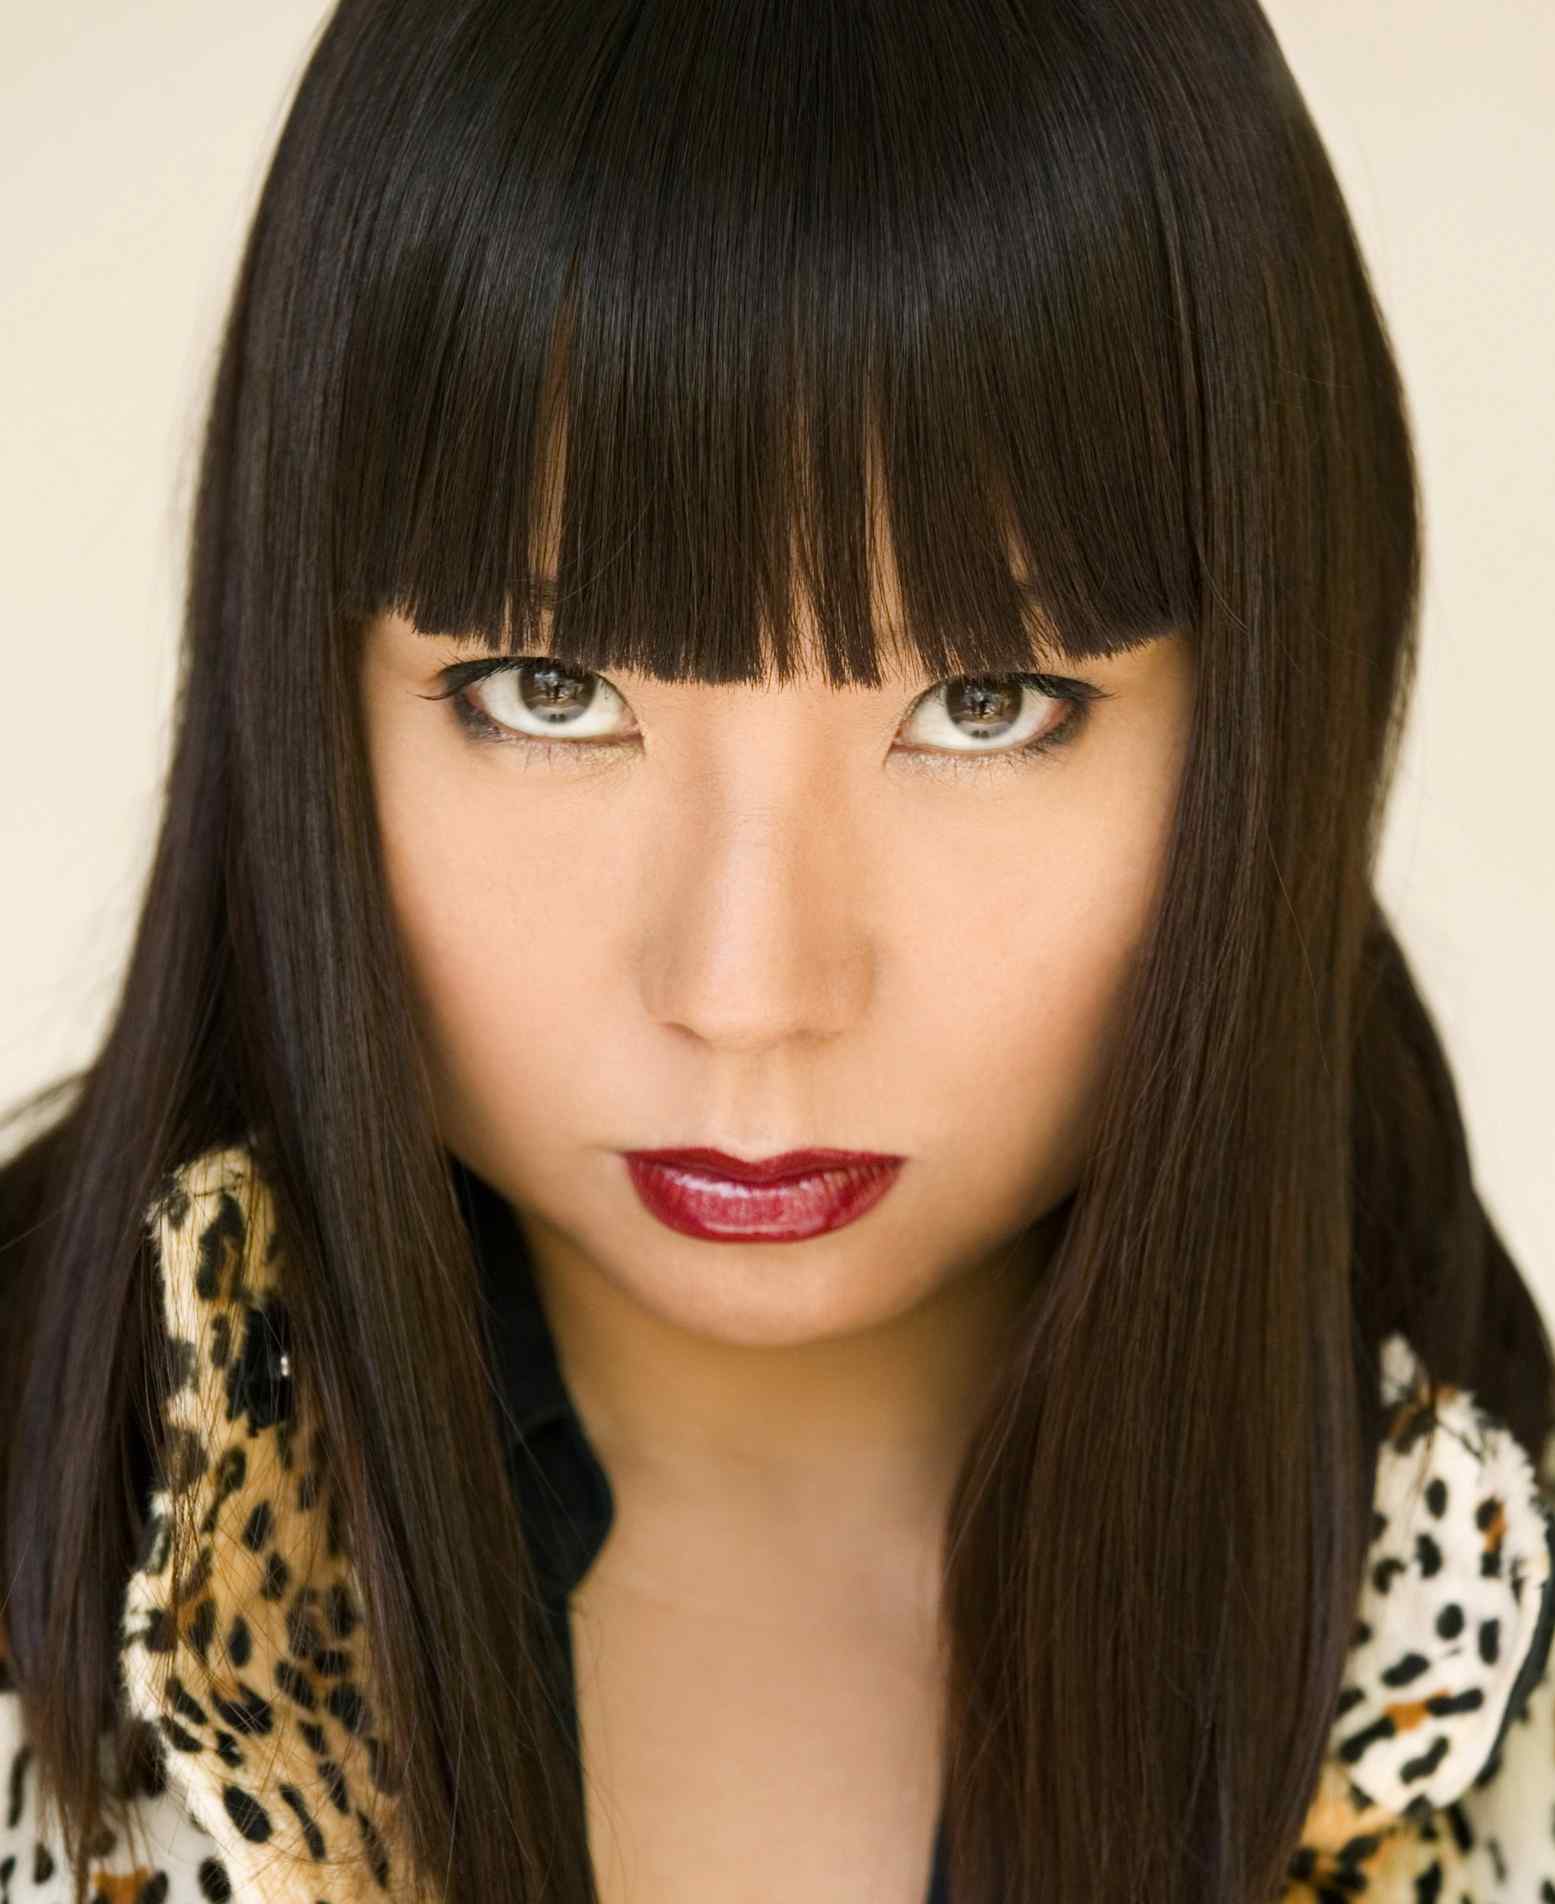 Megumi Hosogai